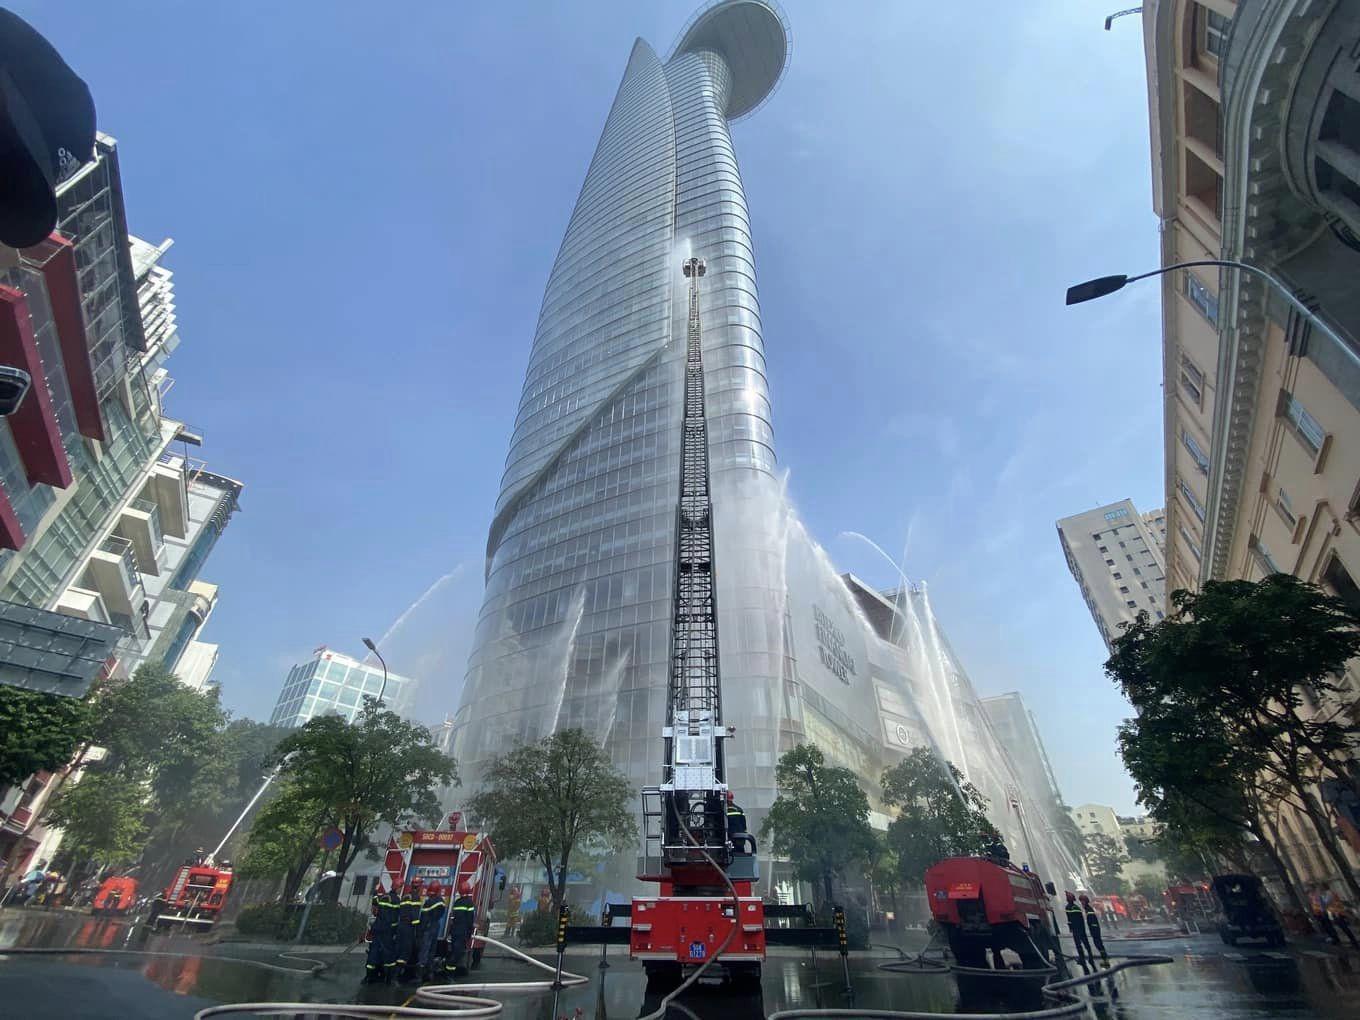 Sáng 30/11, Công an TP.HCM phối hợp cùng các đơn vị liên quan tổ chức diễn tập phương án phòng cháy chữa cháy và cứu nạn cứu hộ tại Tòa nhà Bitexco Financial Tower